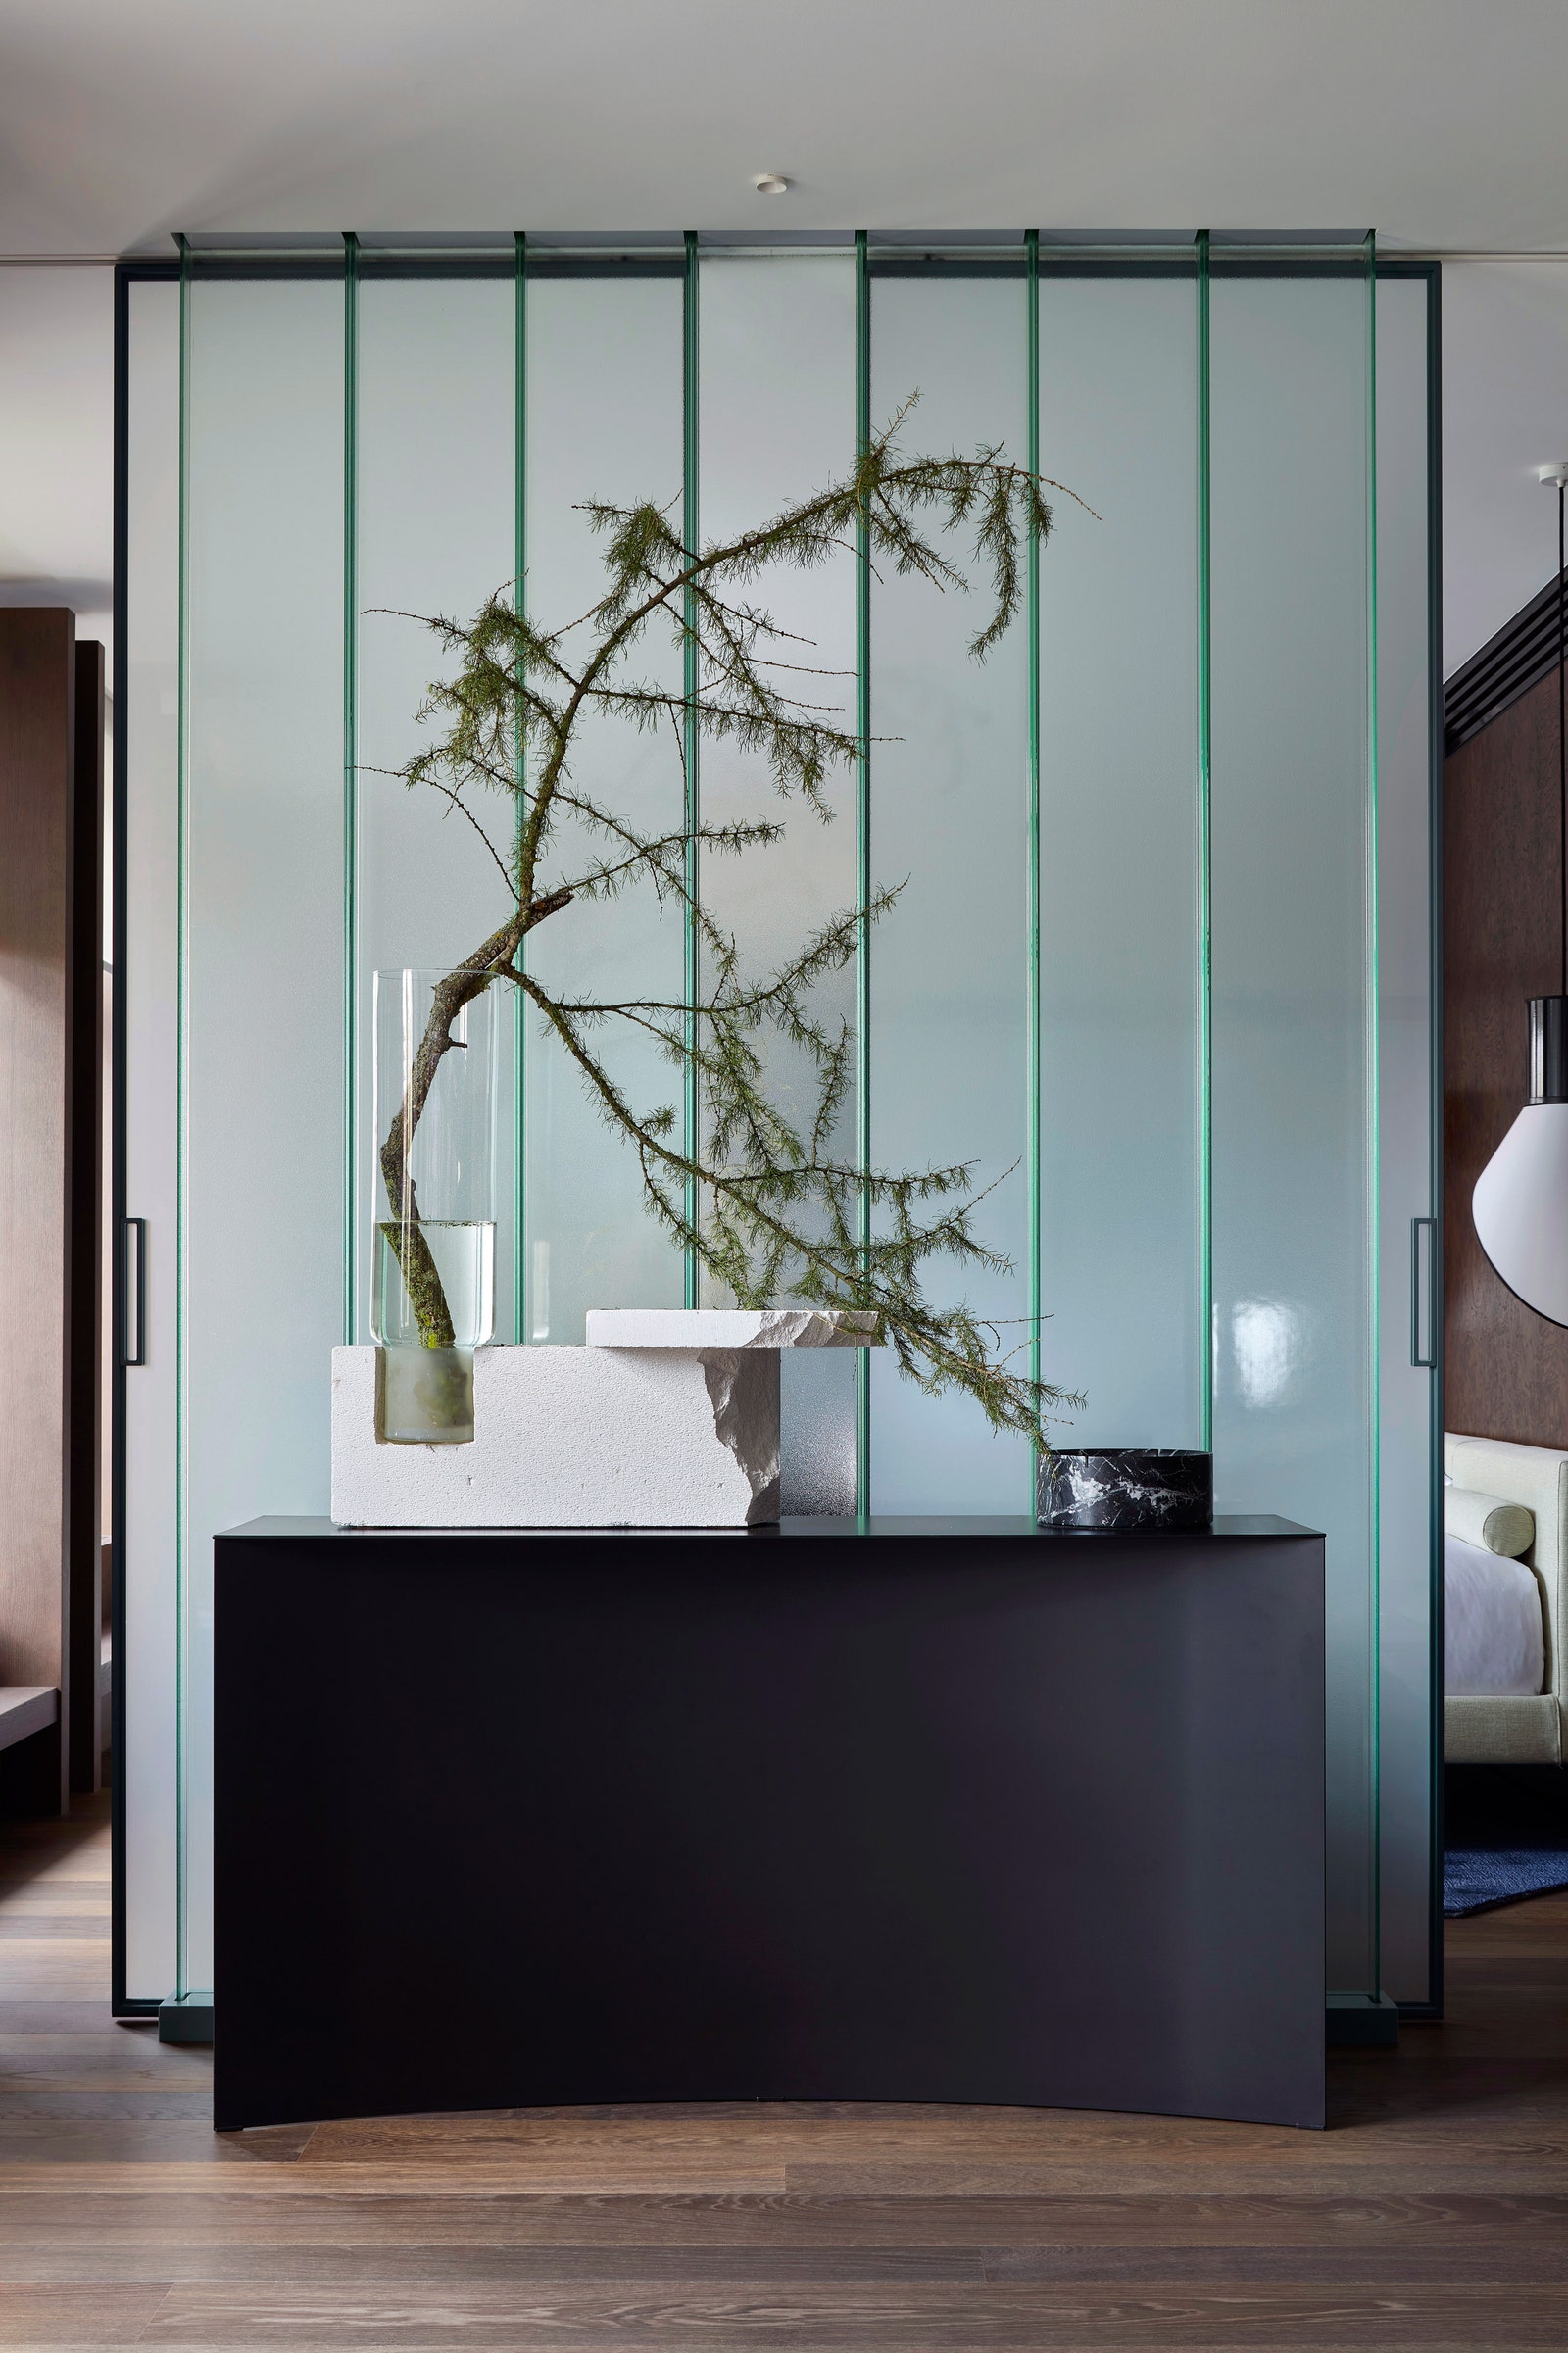 Перегородка между гостиной и спальней сделана из стеклопрофилита Pilkington. Консоль Void по дизайну Гульельмо Полетти...